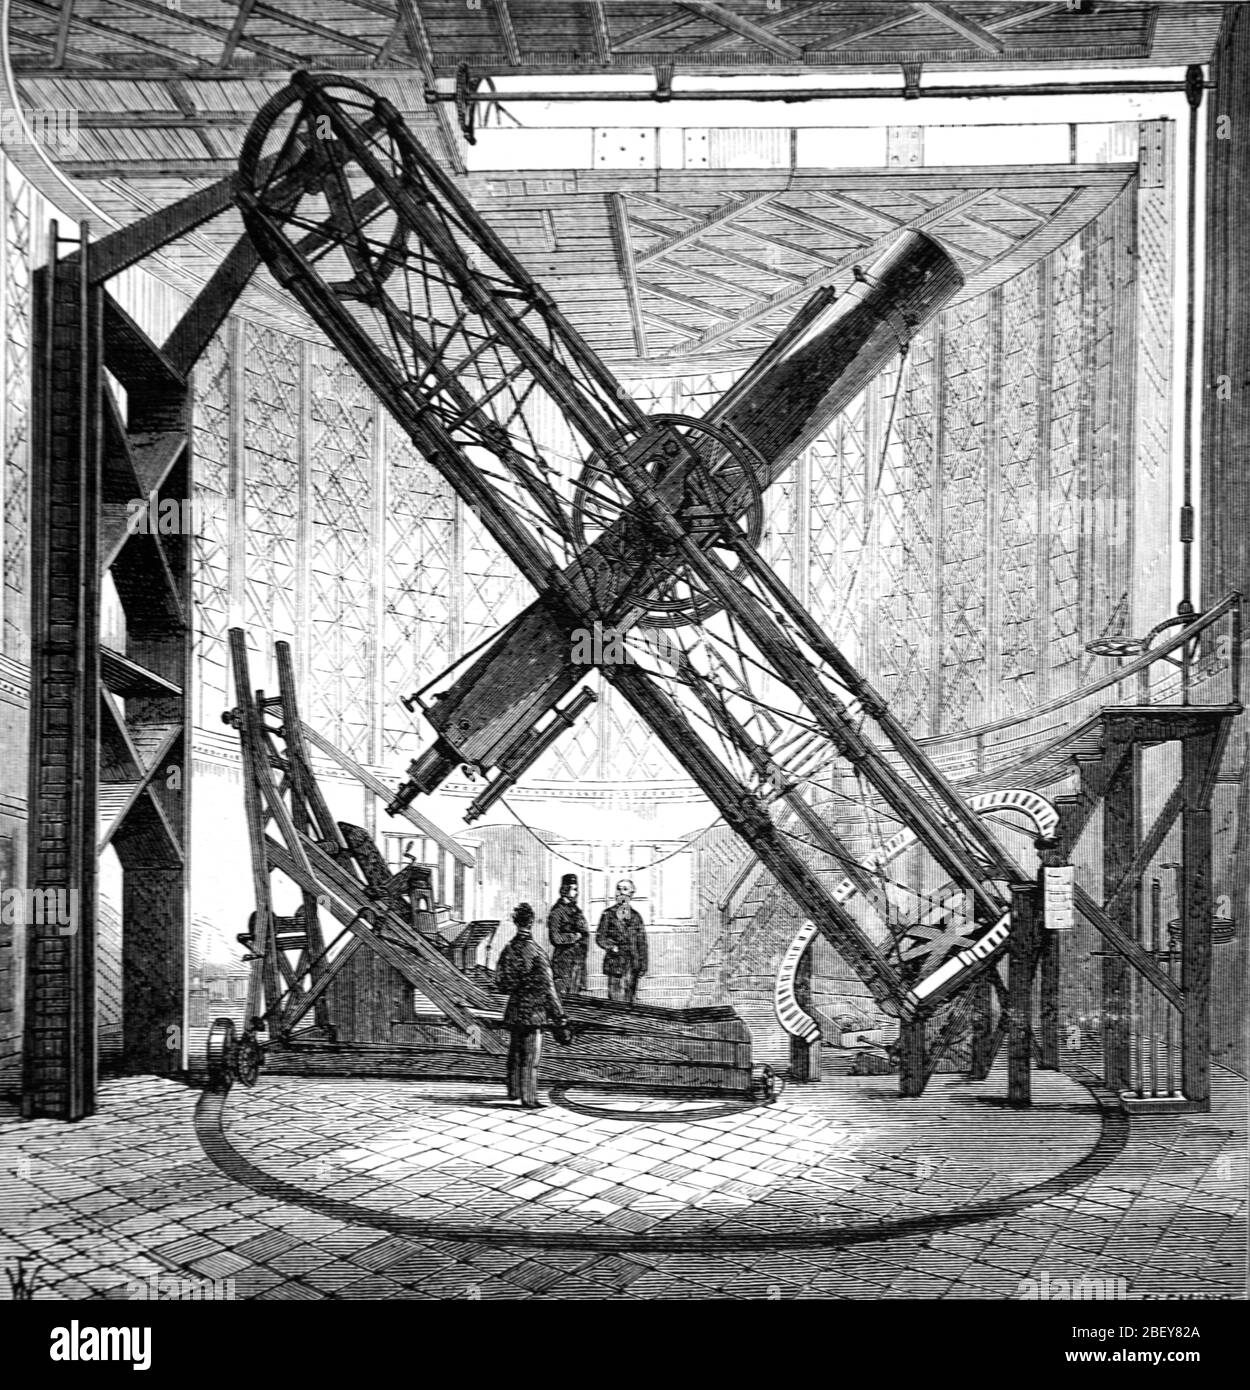 Sheepshanks Äquatorialteleskop am Royal Greenwich Observatory Greenwich London England Großbritannien. Vintage oder Alte Illustration oder Gravur 1888 Stockfoto